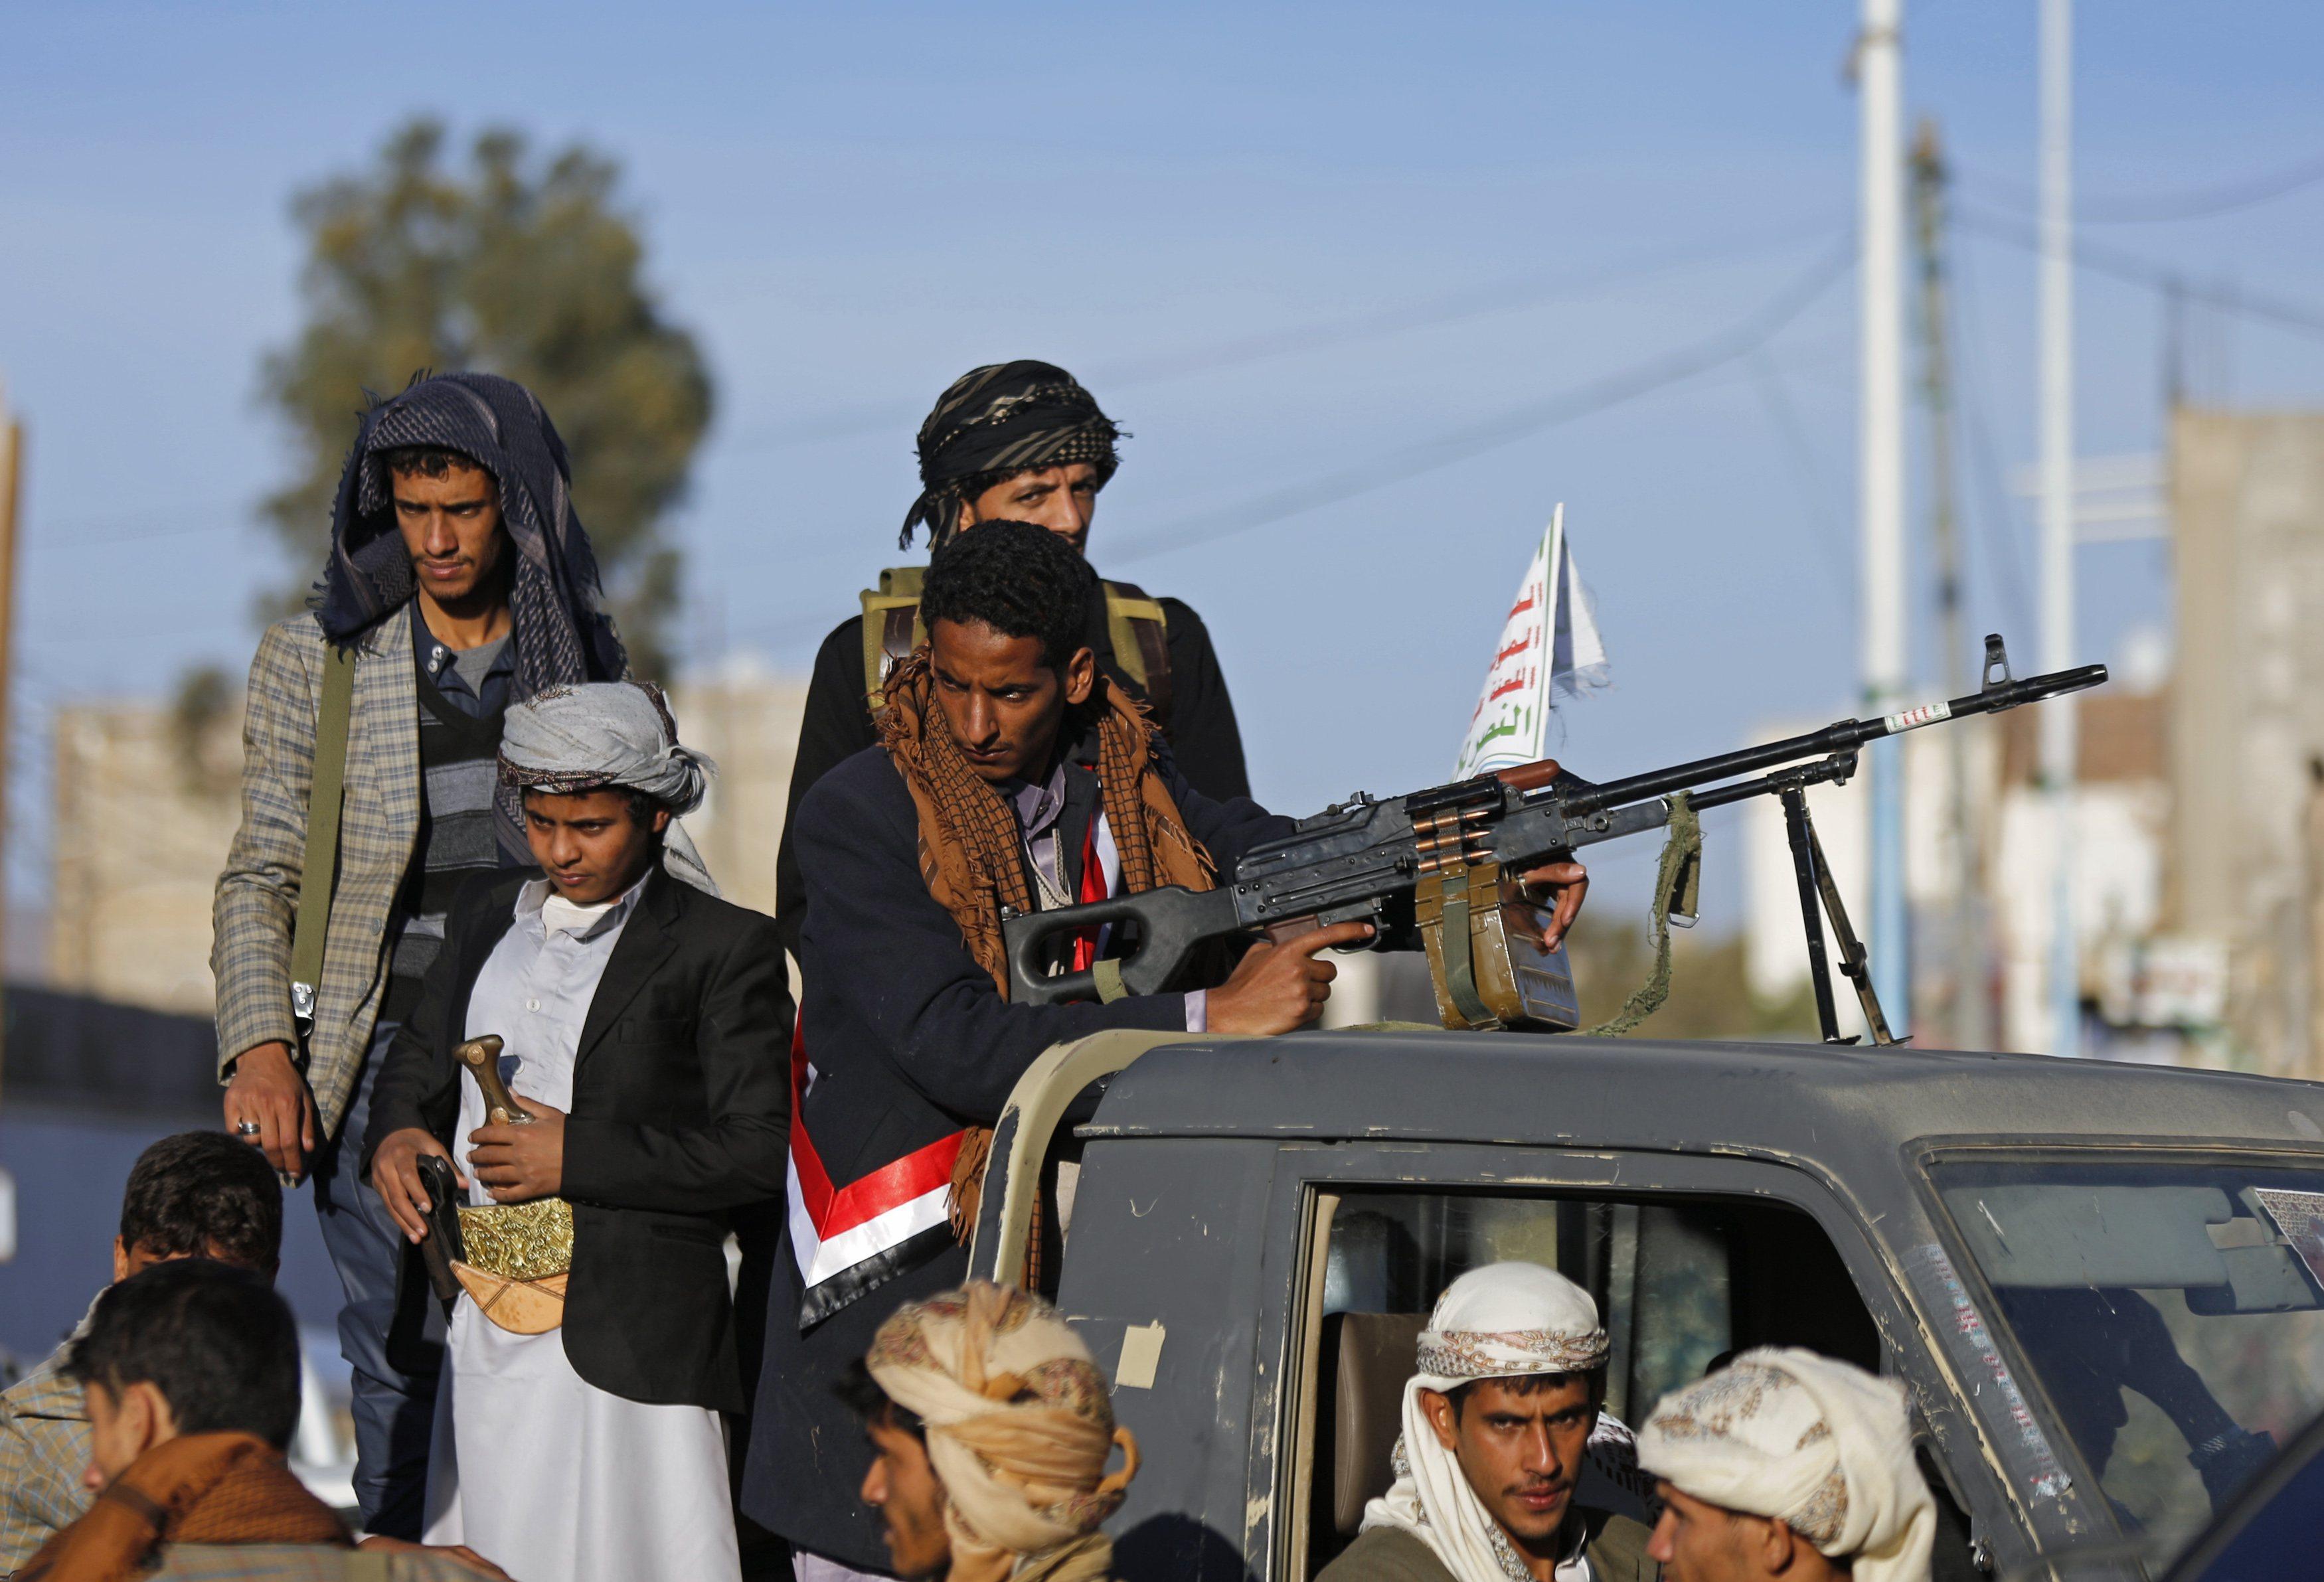 الجنرال عشقي: الحوثيون خذلوا الإمارات التي مولتهم لضرب "إخوان اليمن"